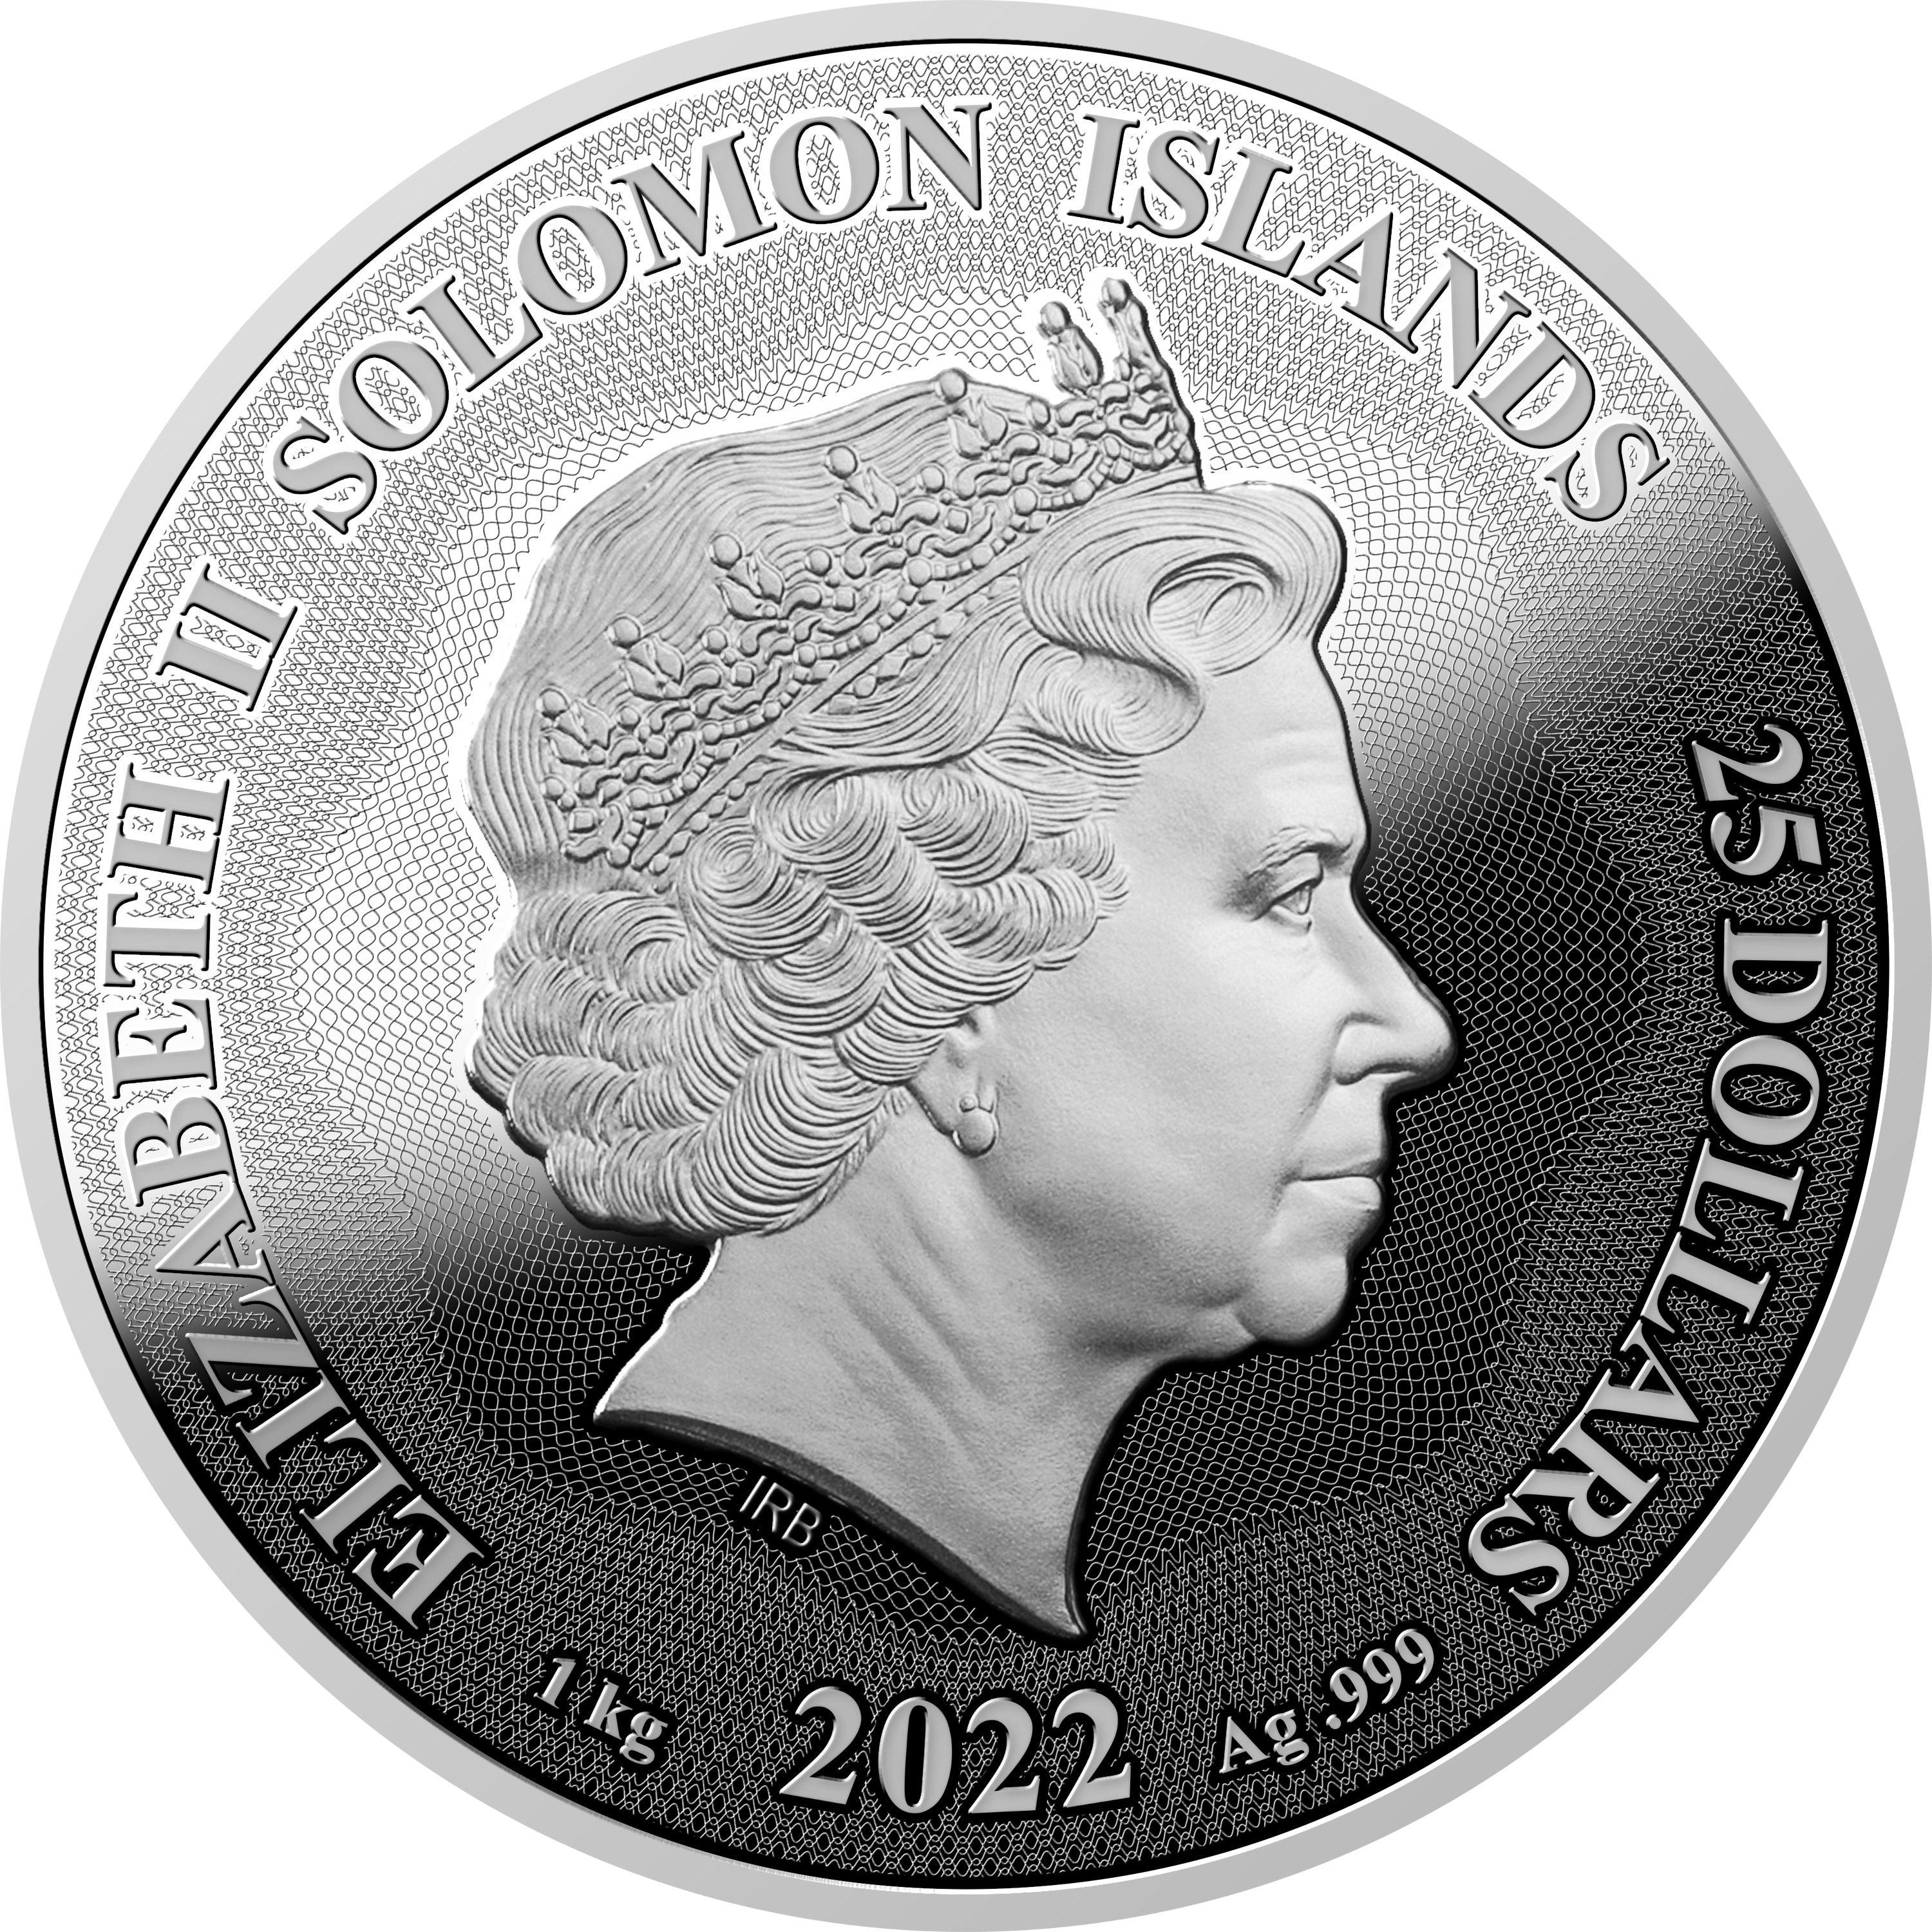 Mastersize Coin “Doha” 1 kg Silver Coin $25 Solomon Islands 2022 - PARTHAVA COIN